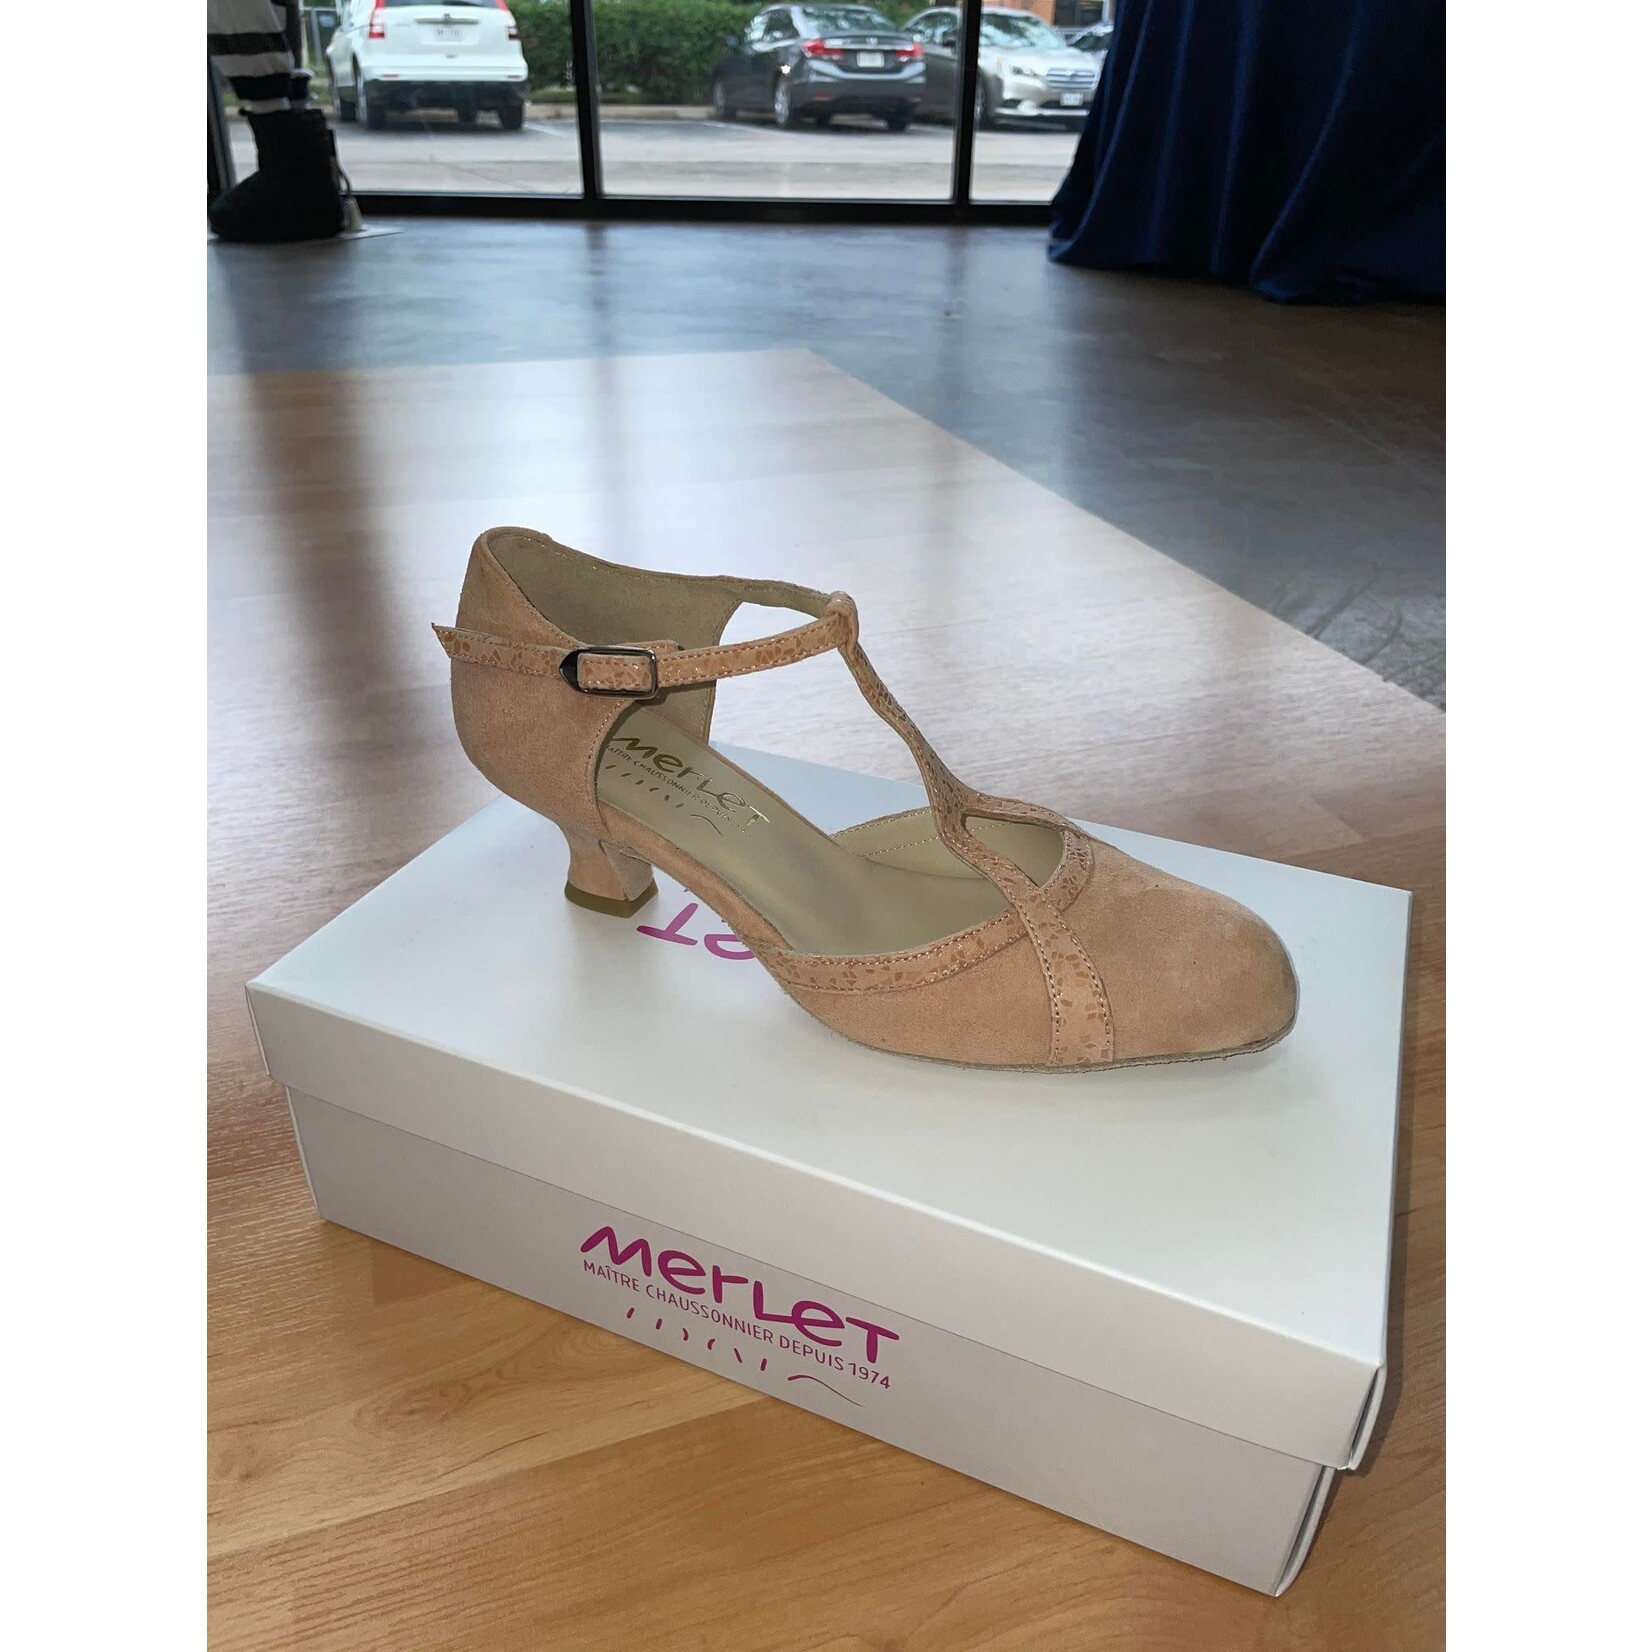 Merlet Merlet Betty Womens Ballroom Shoes